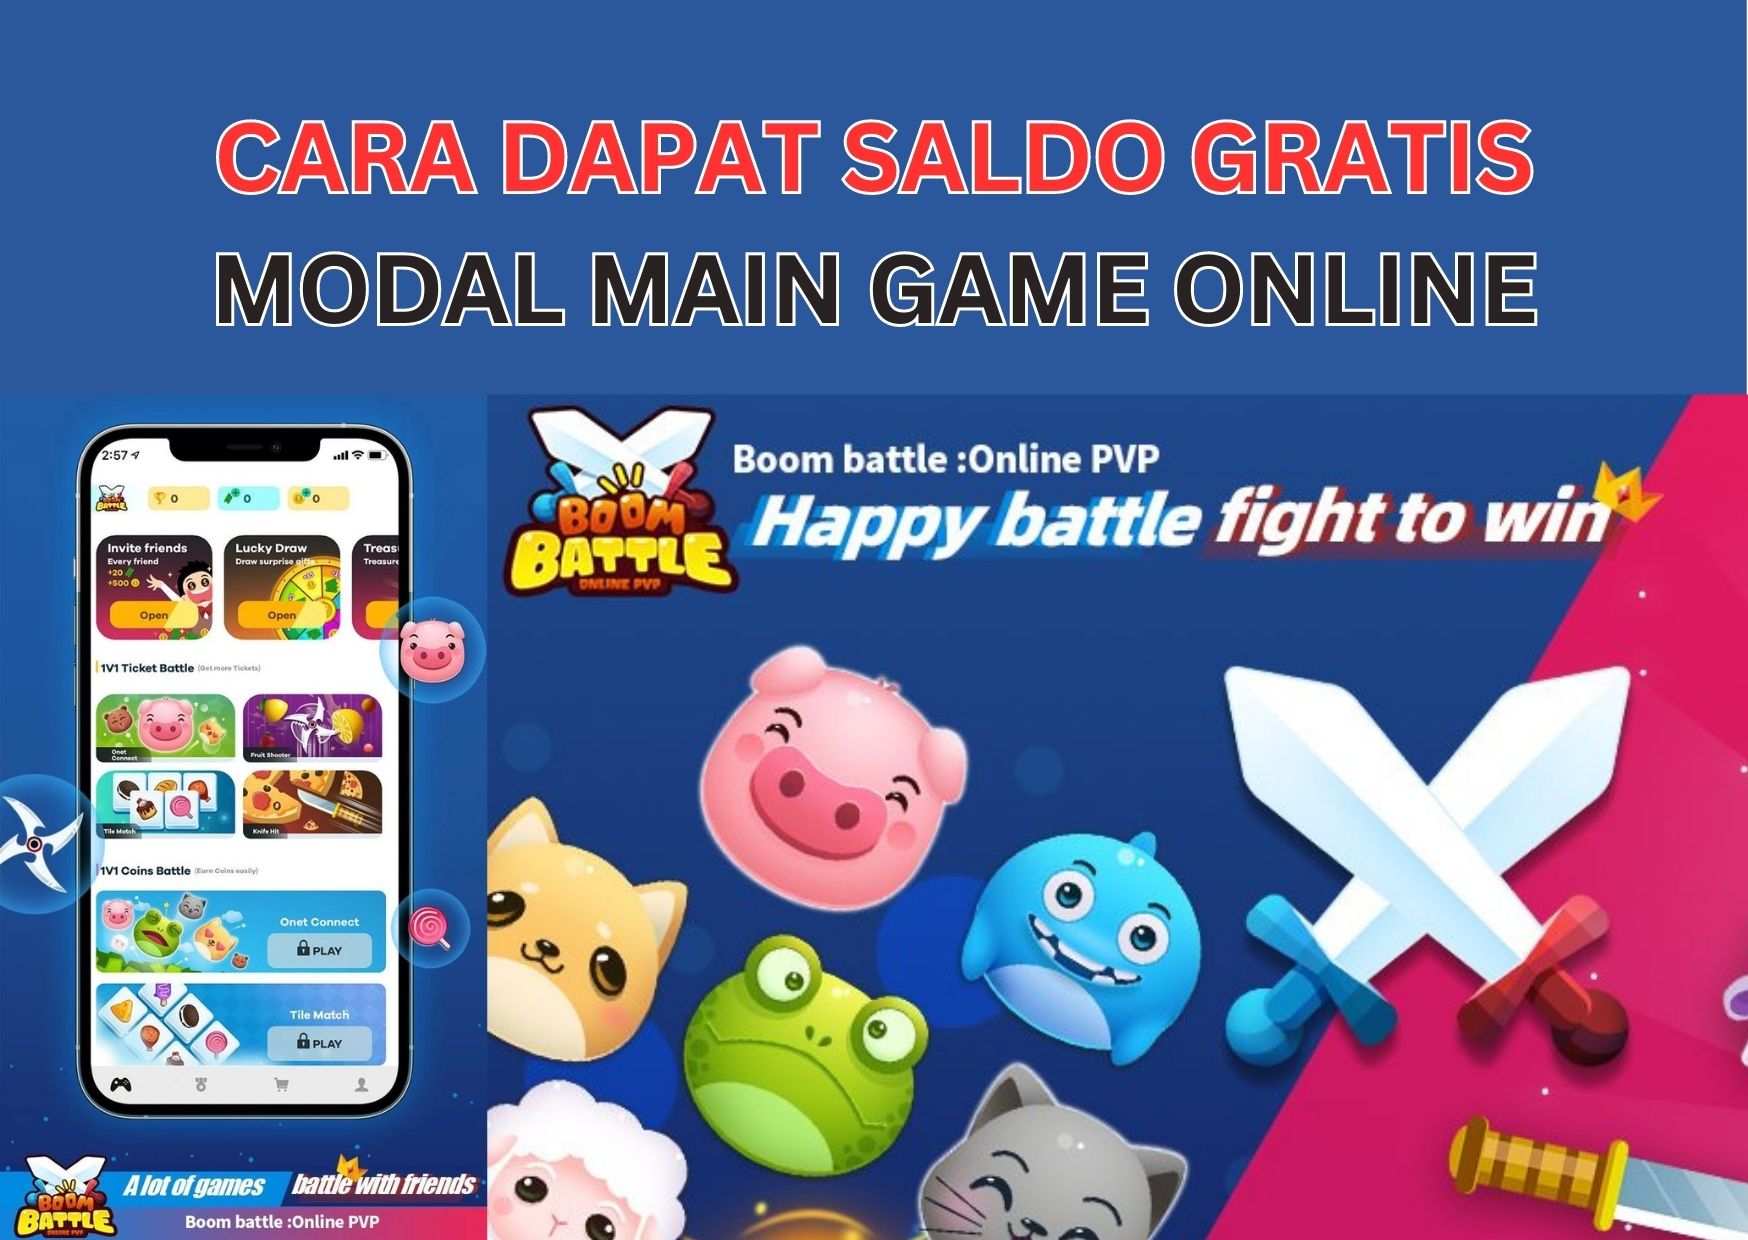 Cara Dapat Saldo Gratis dari Boom Battle: Aplikasi Penghasil Uang Game Online